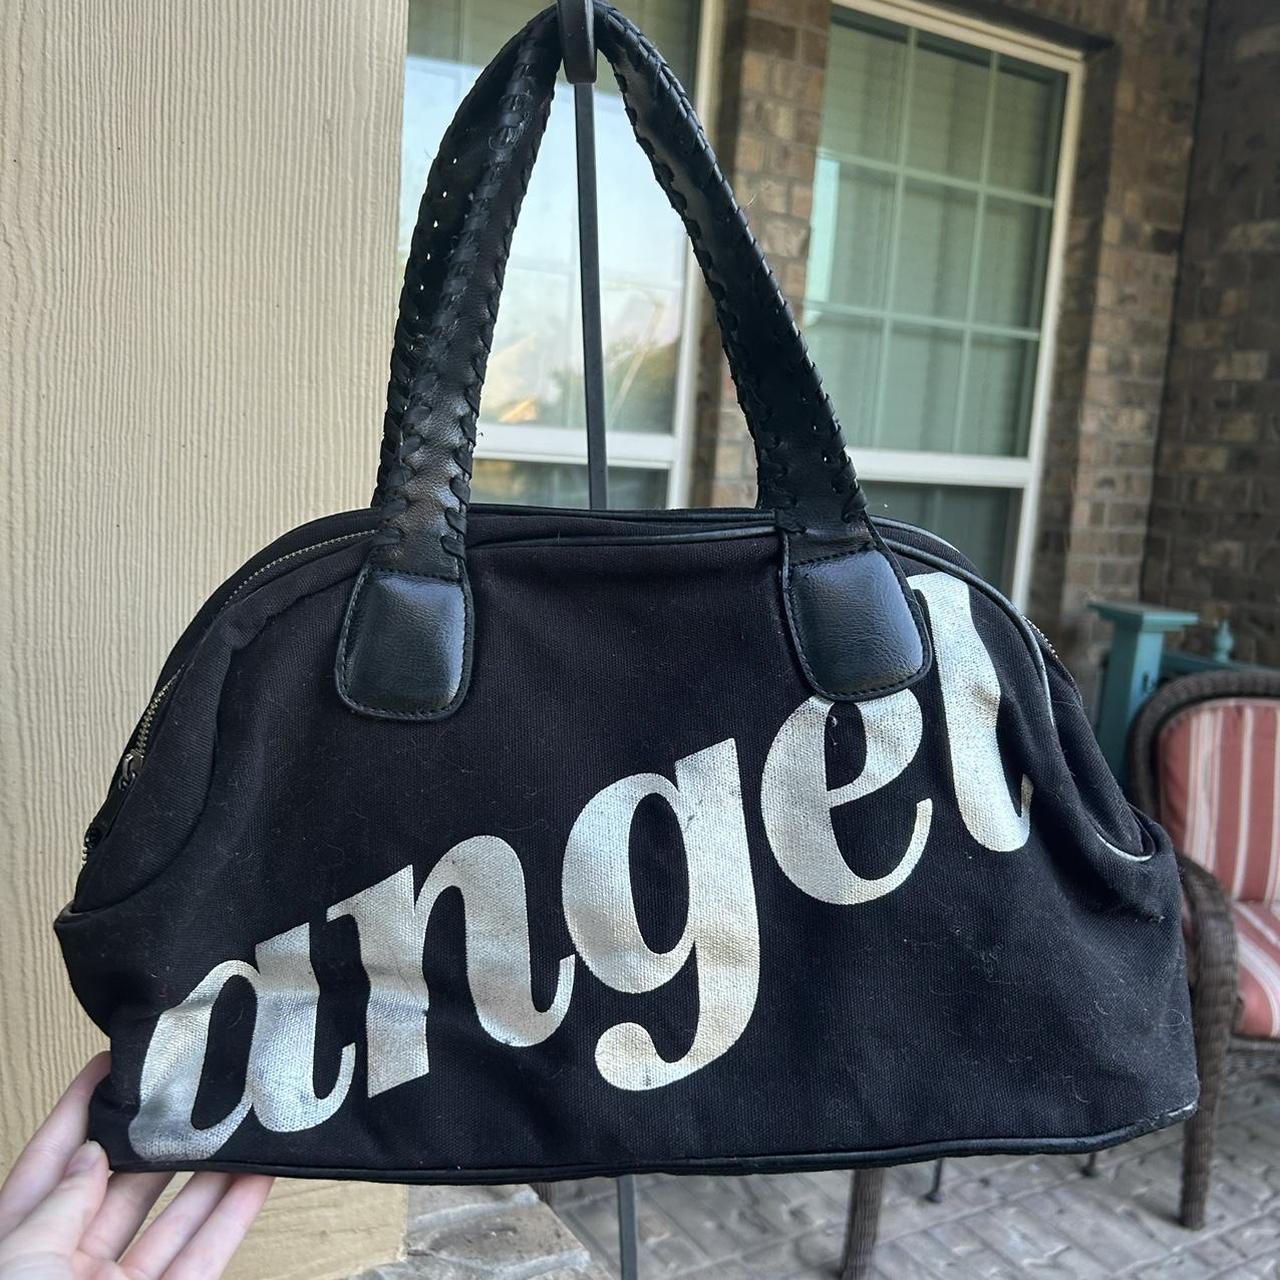 Victoria's Secret, Bags, Victoria Secret Black Handbag